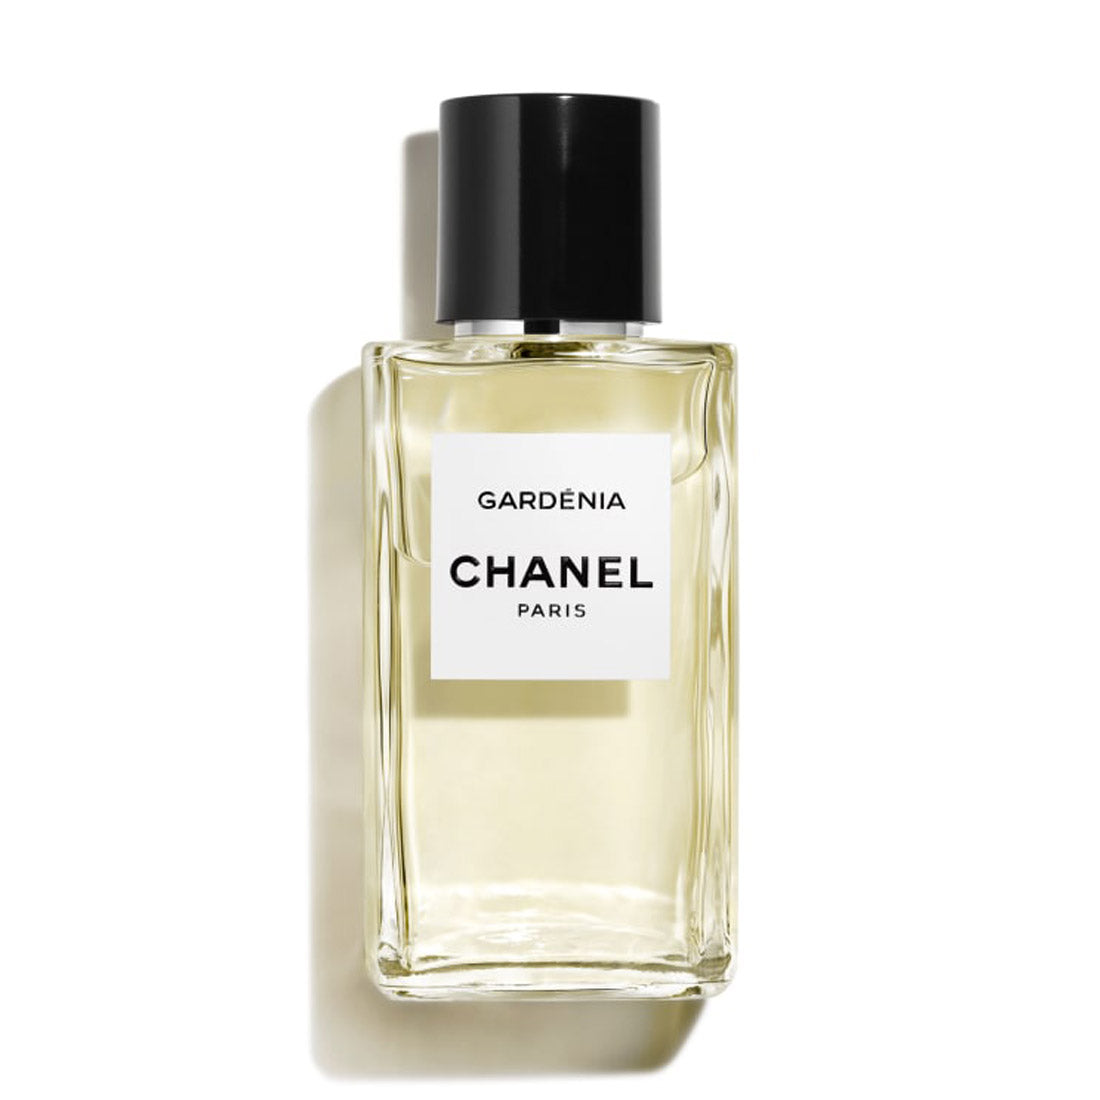 Chanel Paris Gardenia Les Exclusifs De Chanel Eau de Parfum